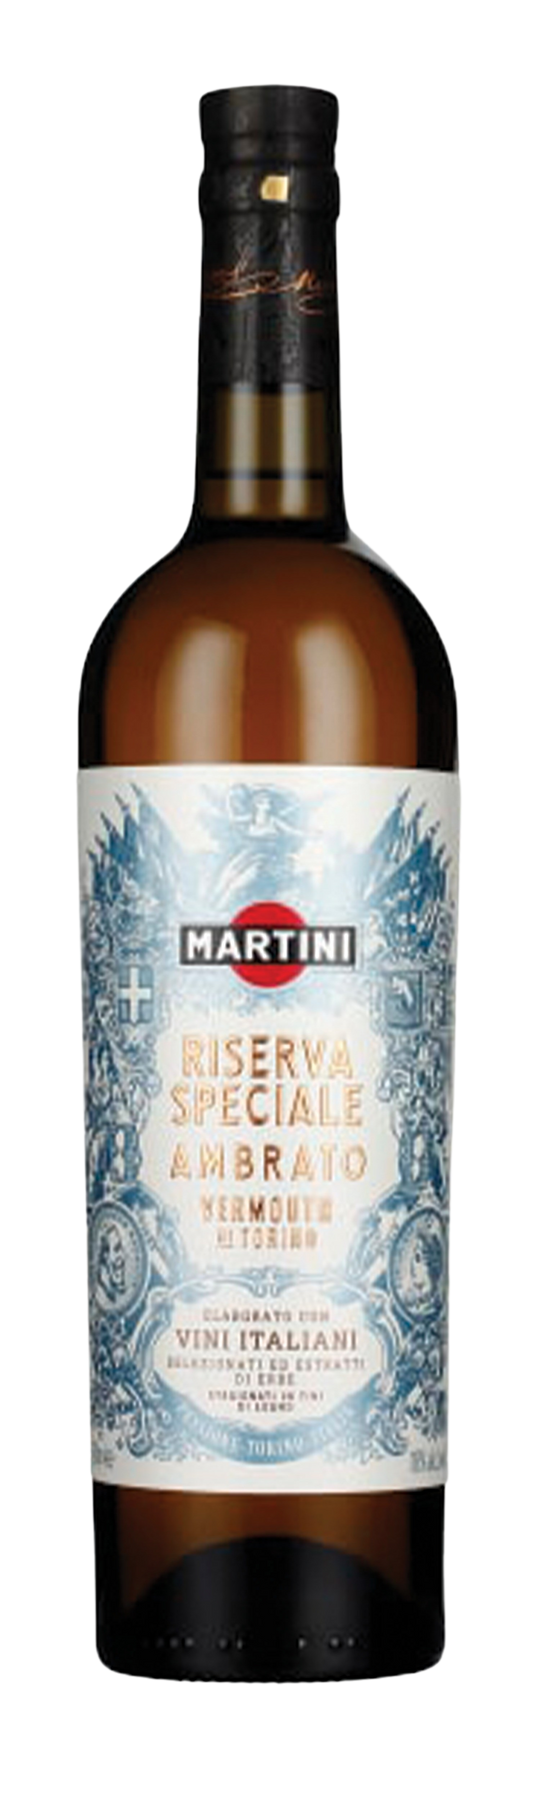 Martini Riserva Speciale Ambrato 18% 75cl